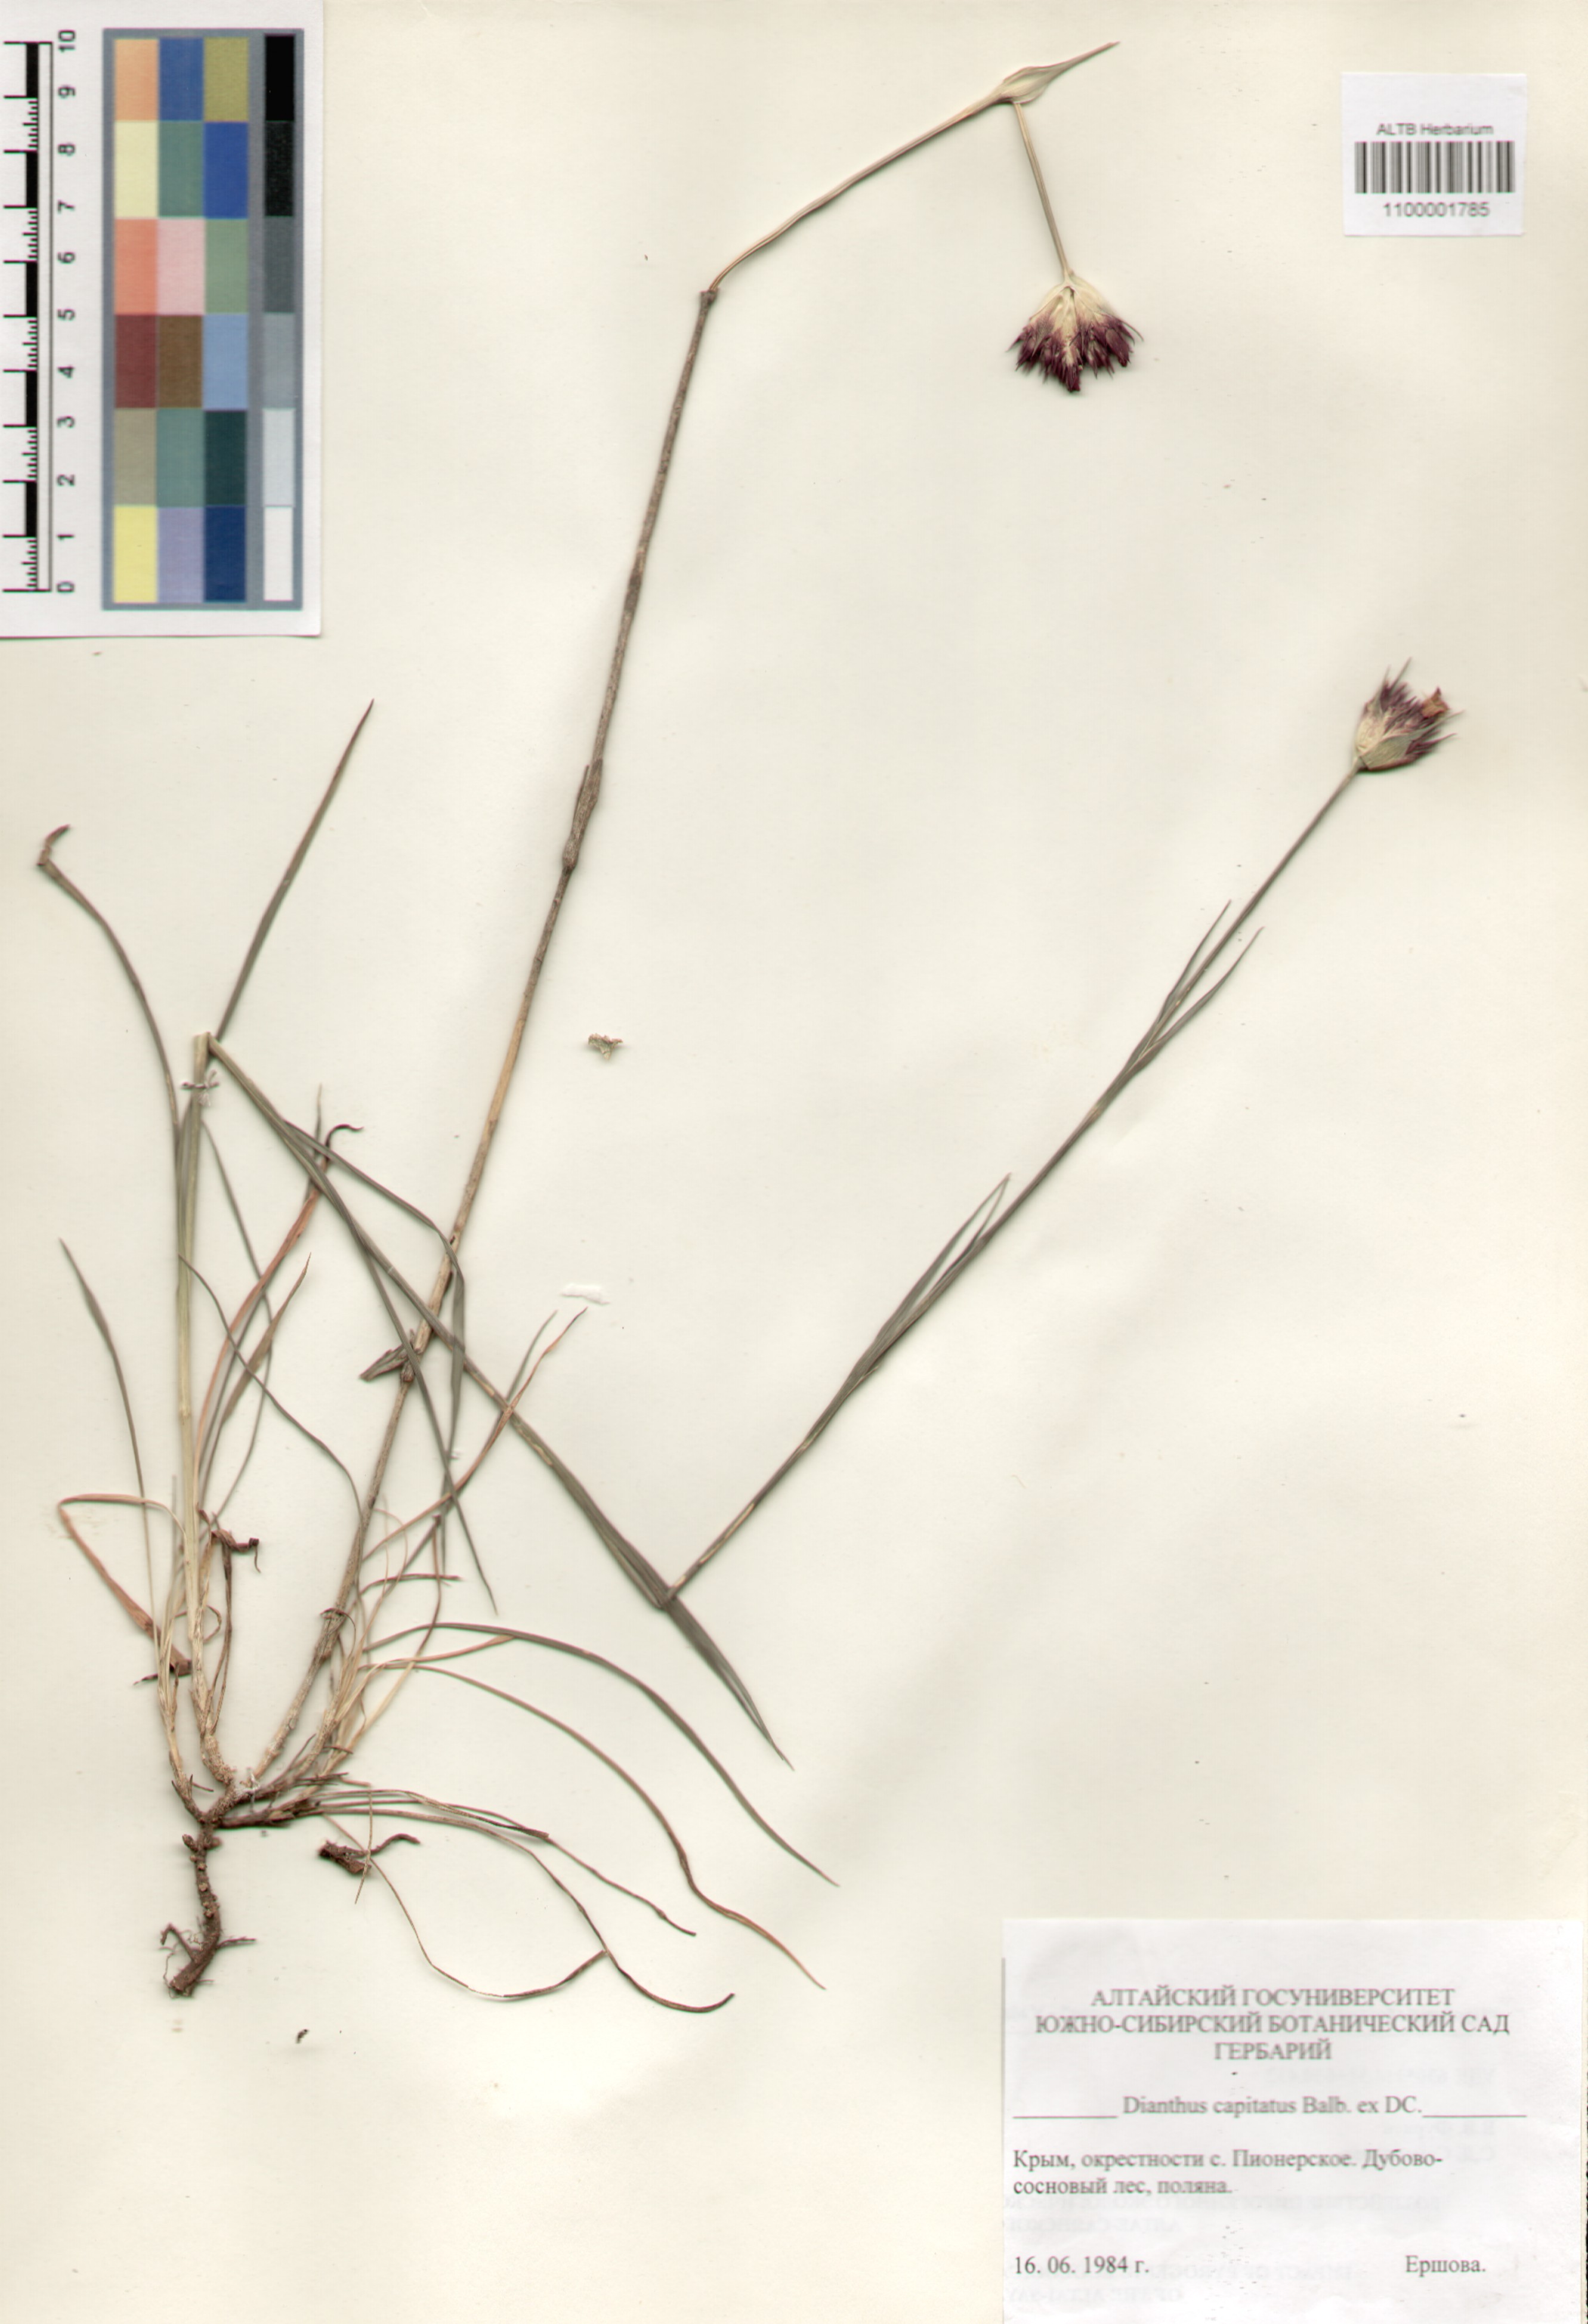 Caryophyllaceae,Dianthus capitatus Balb. ex DC.